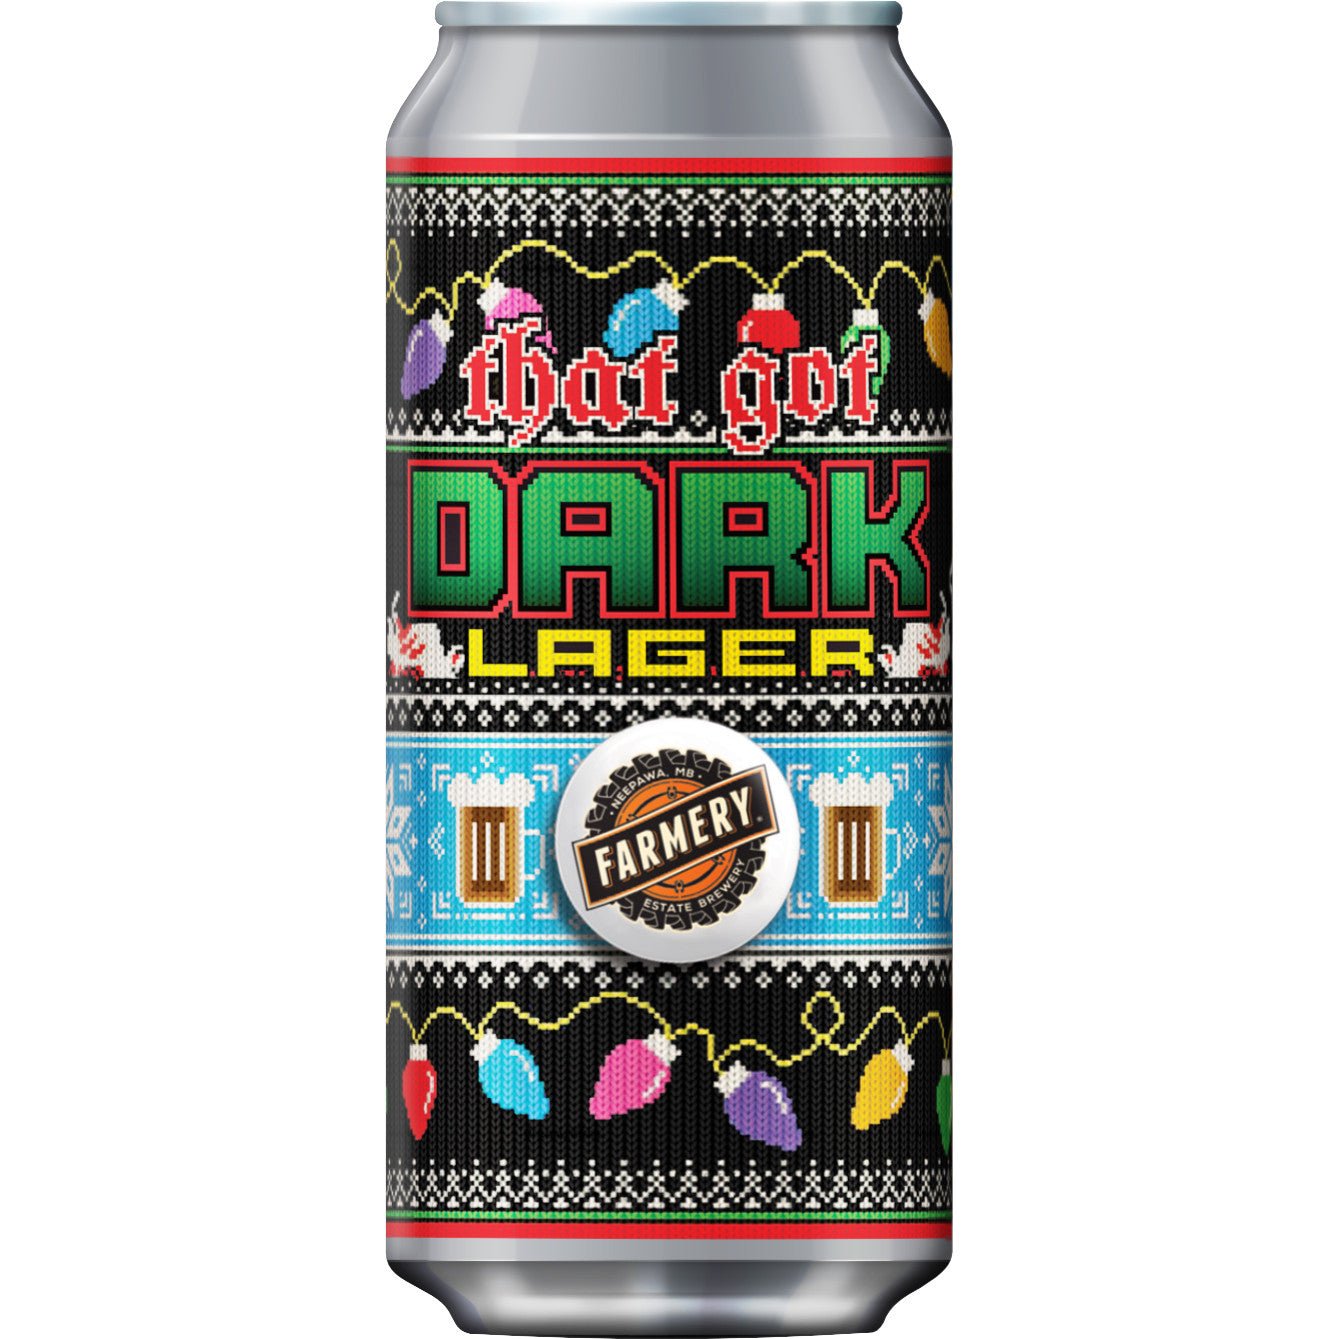 Dark Lager - Farmery Estate Brewing Company Inc.-Seasonal Beers